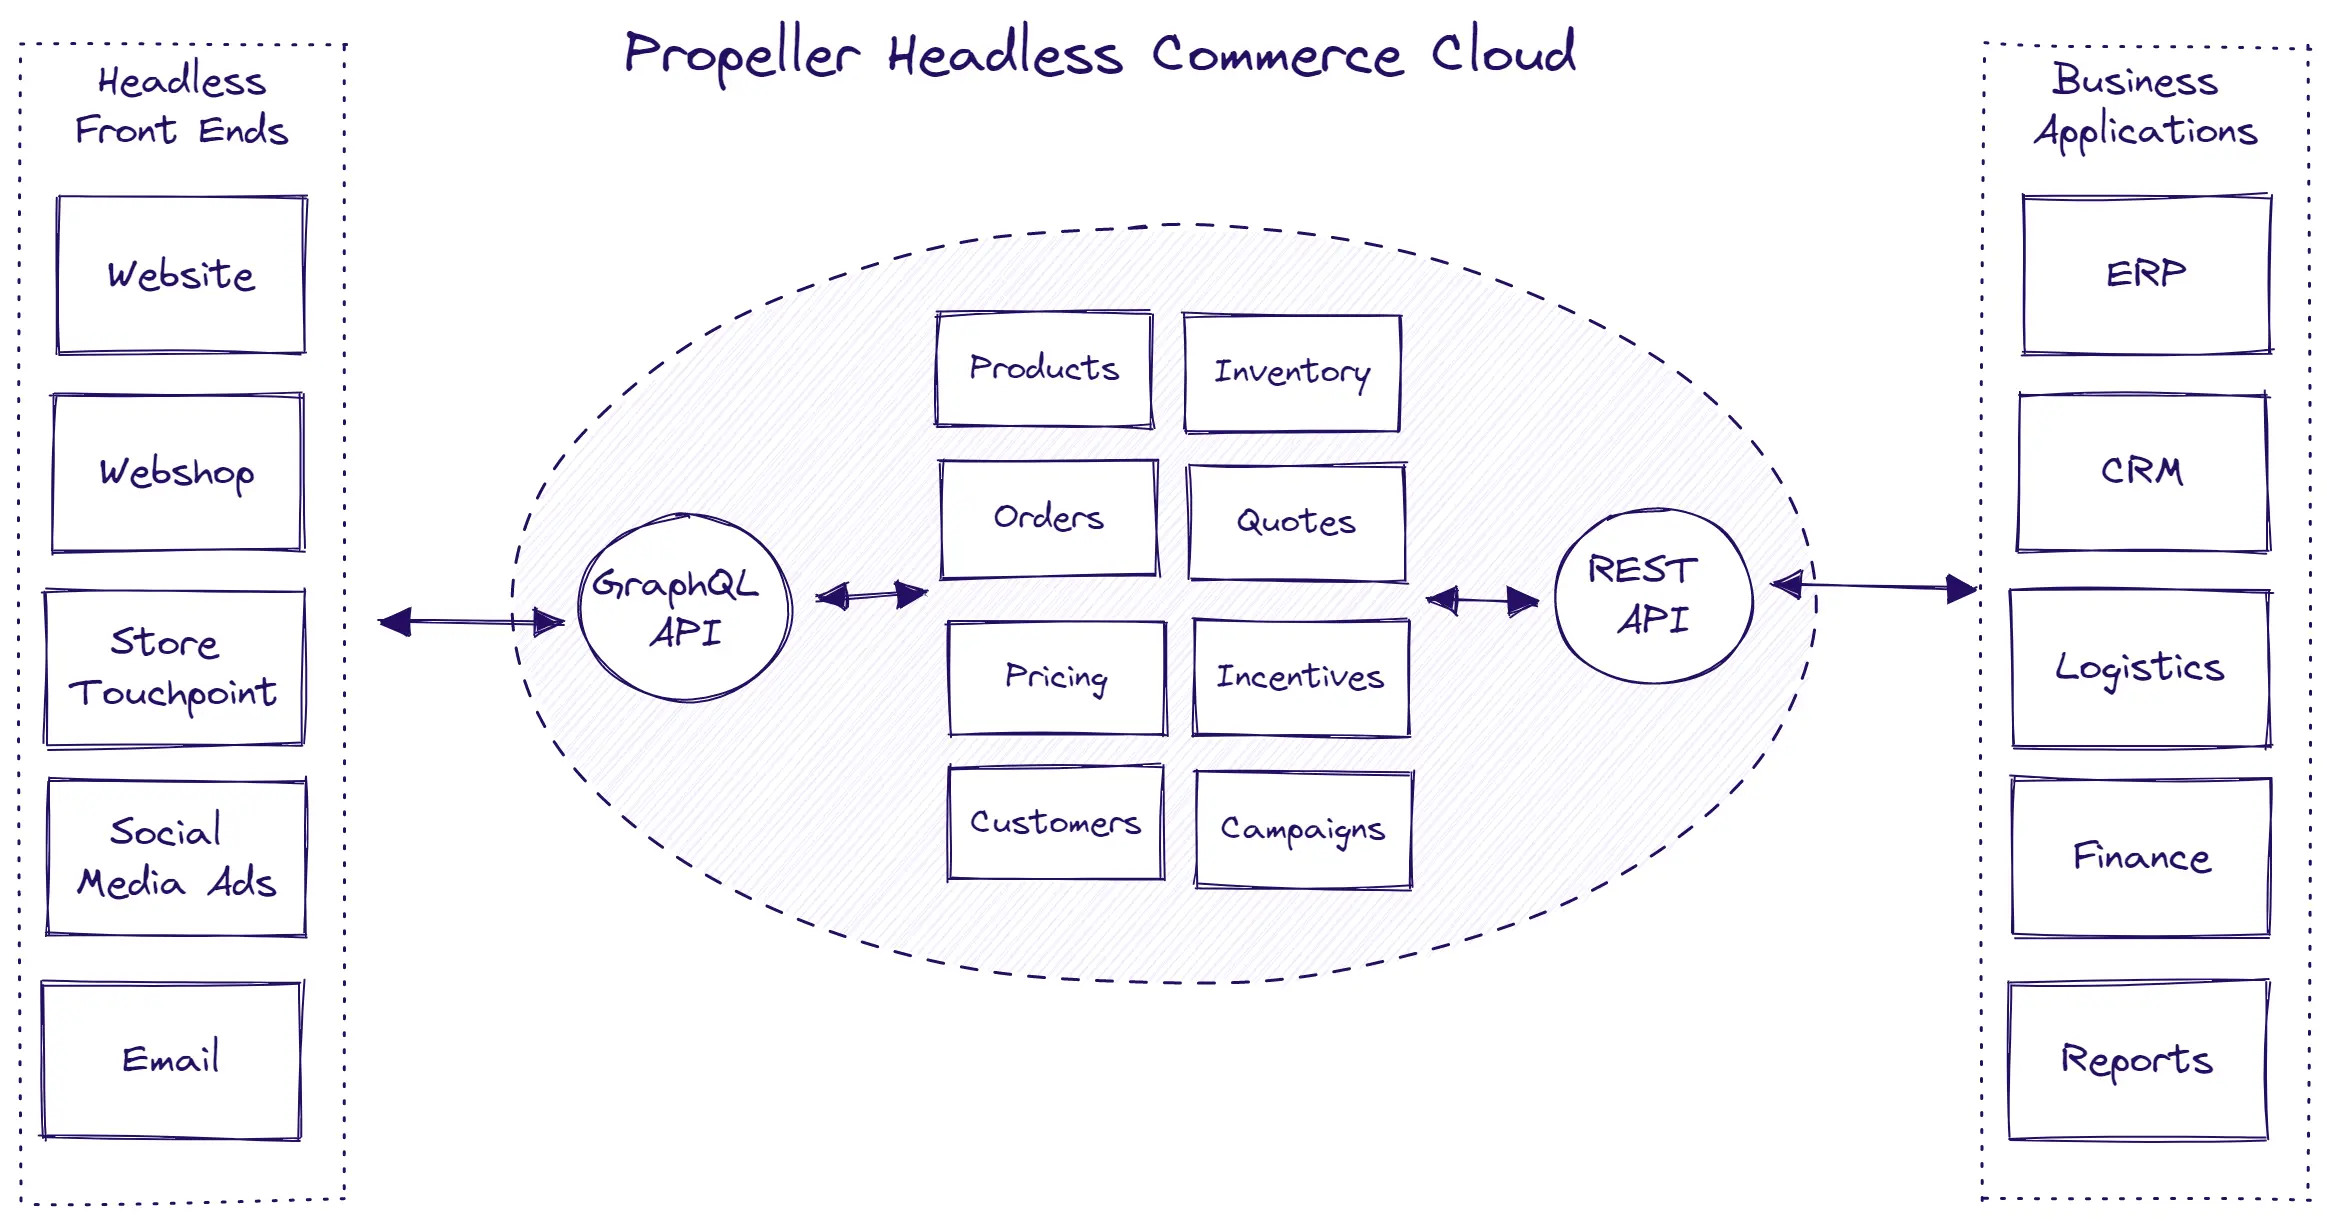 Propeller Headless Commerce